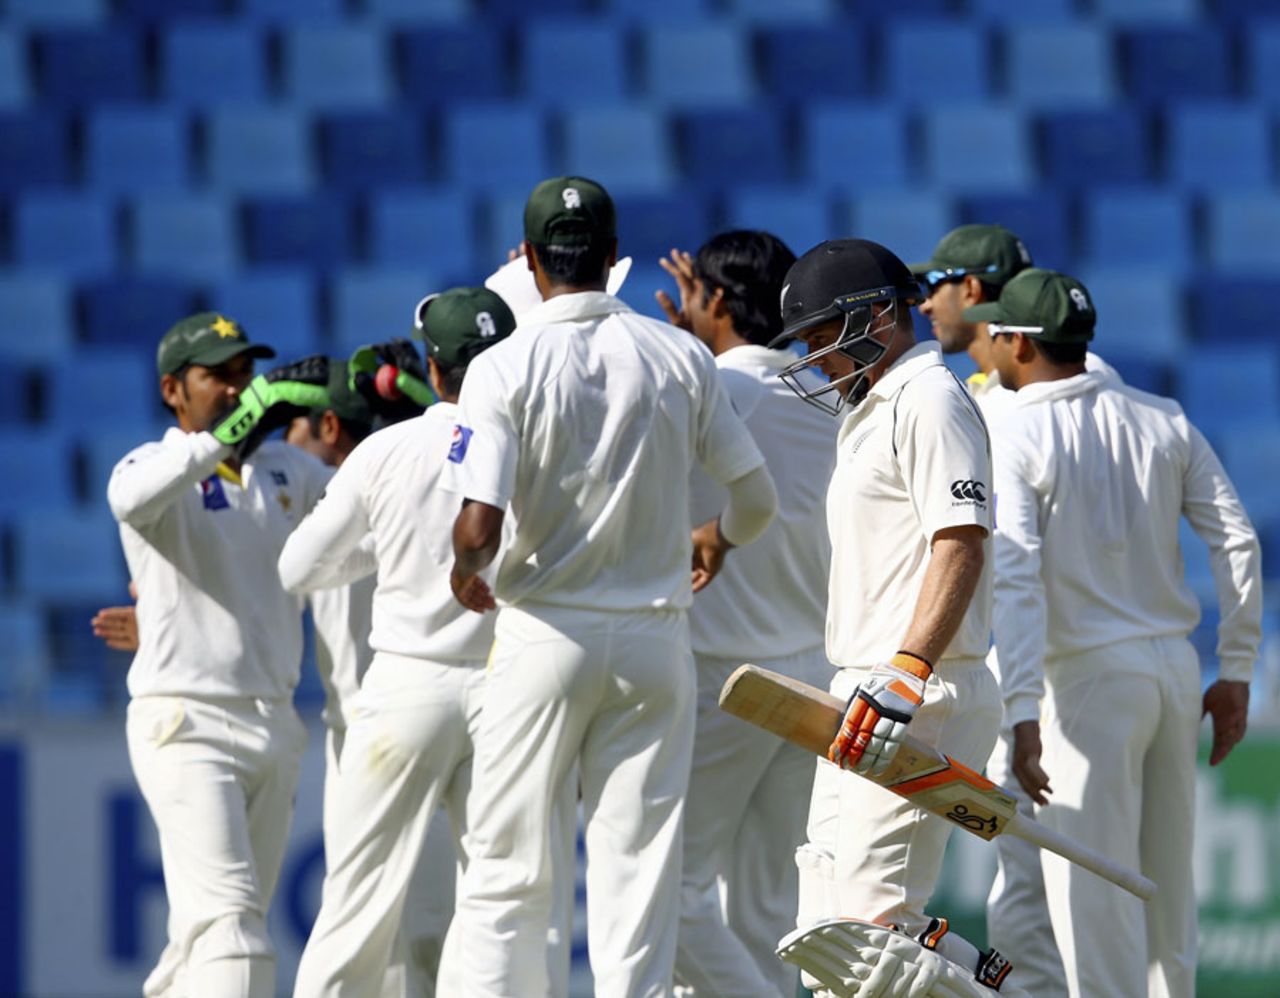 Tom Latham walks back after being dismissed for 137, Pakistan v New Zealand, 2nd Test, Dubai, 2nd day, November 18, 2014